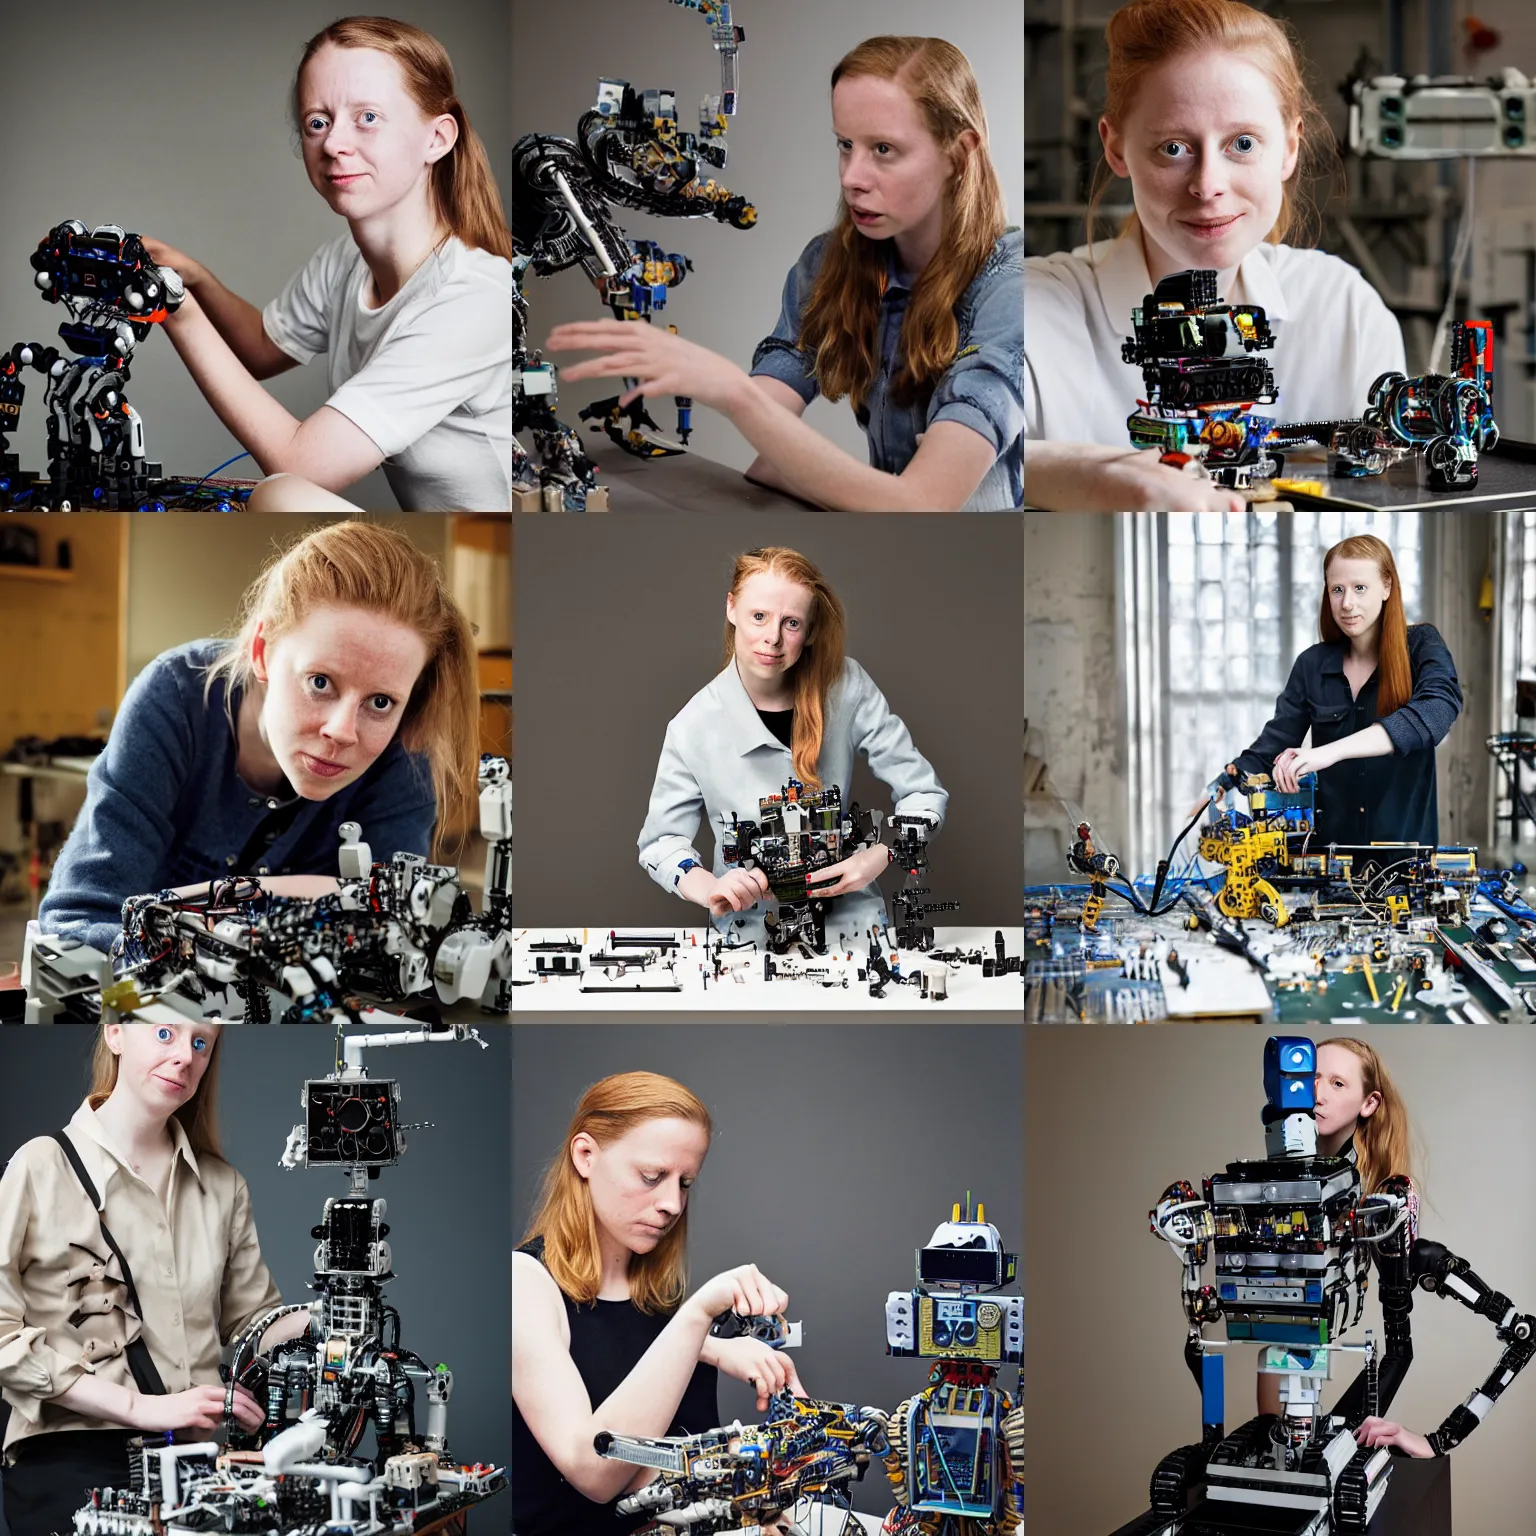 Prompt: simone giertz building a robot, portrait photography by annie leibovitz